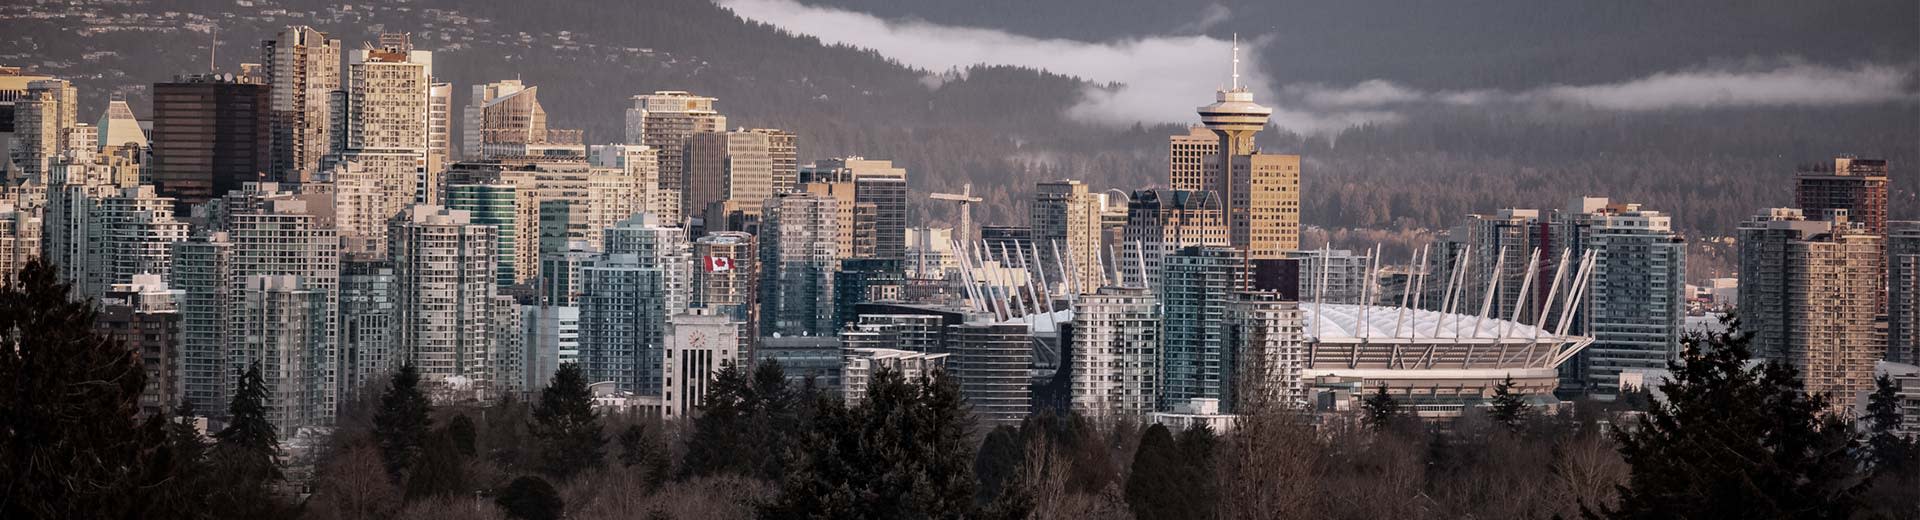 An einem kalten Tag in Vancouver schaut der berühmte Aussichtspunkt von Vancouver hinter einer Reihe von Hochhäusern.